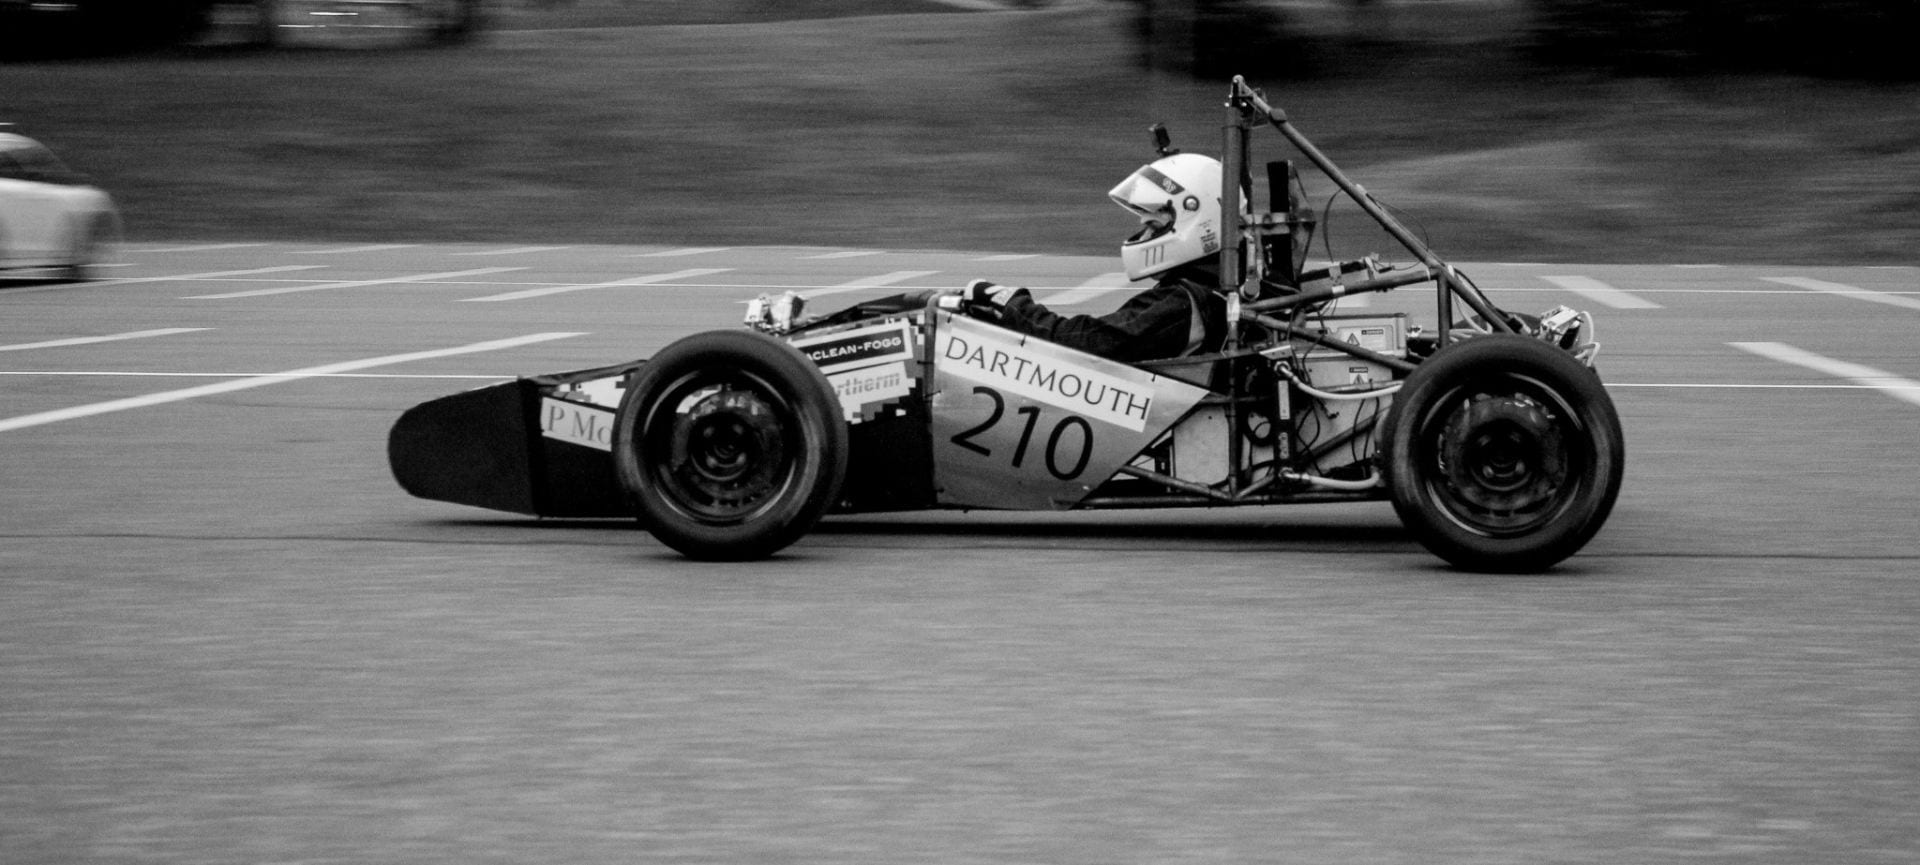 CONTACT Dartmouth Formula Racing